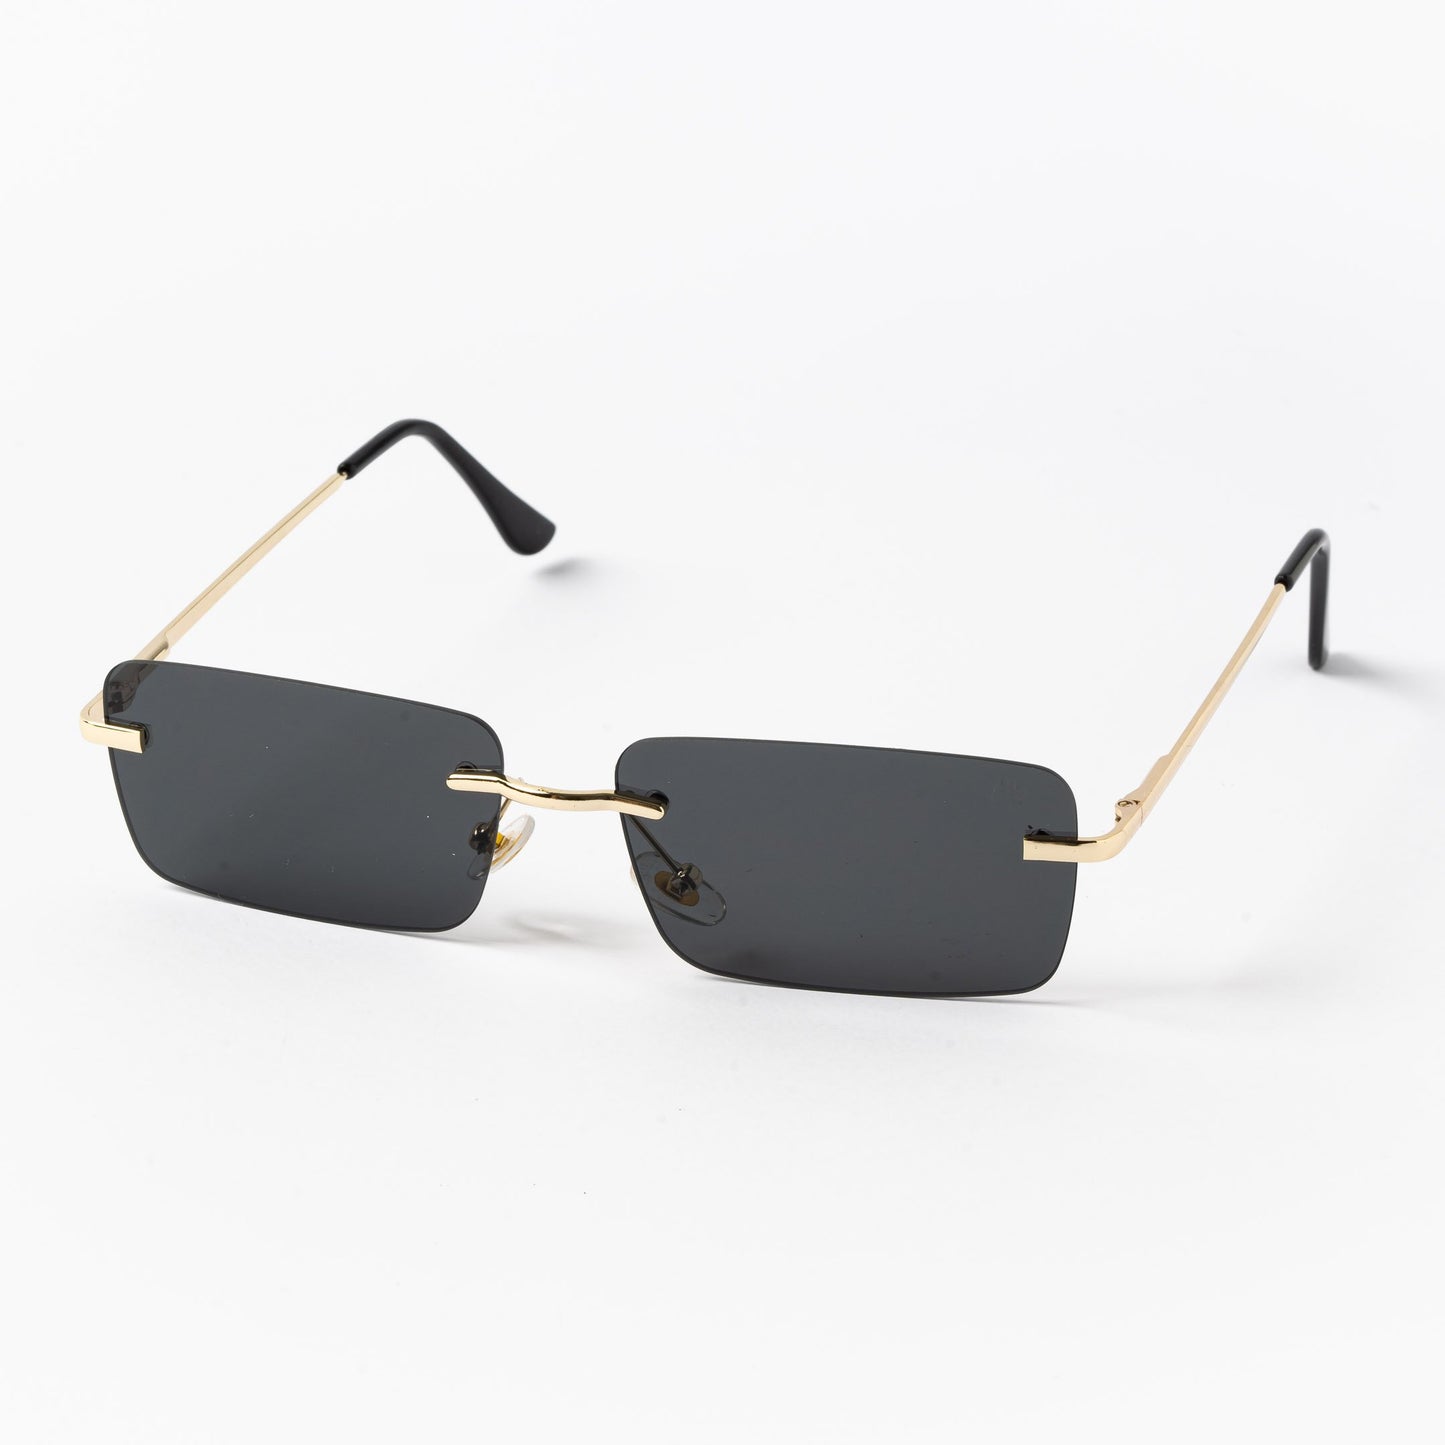 Ορθογώνια Γυαλιά Ηλίου Tez της Exposure Sunglasses με προστασία UV400 σε χρυσό χρώμα σκελετού και μαύρο φακό. Πλάγια προβολή.